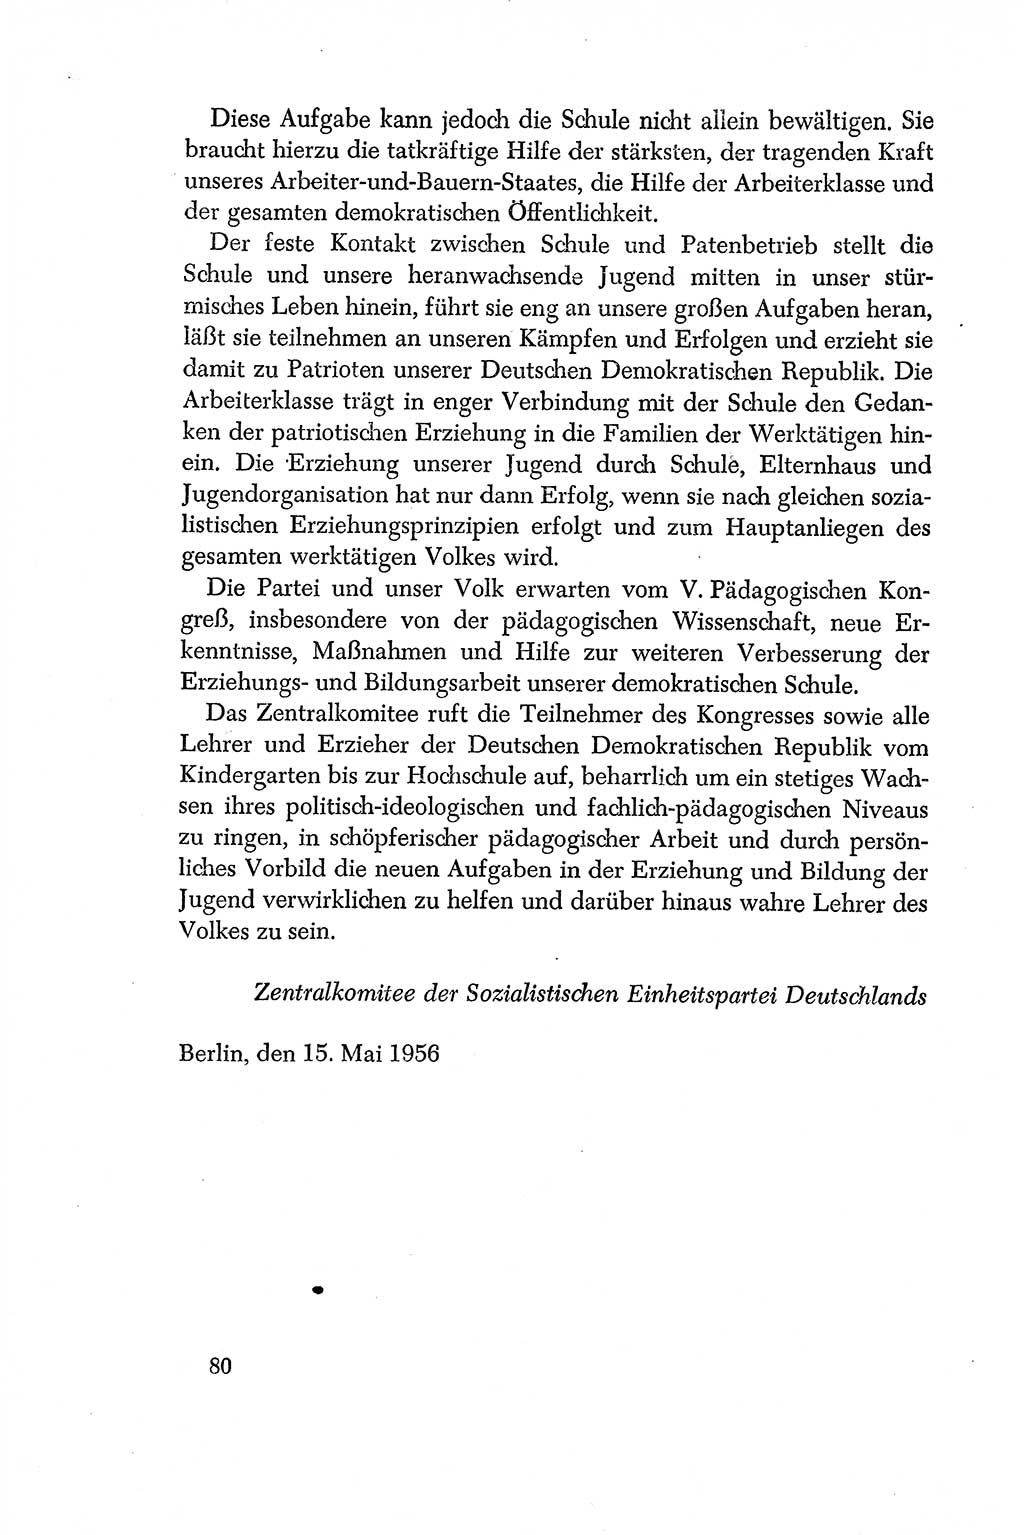 Dokumente der Sozialistischen Einheitspartei Deutschlands (SED) [Deutsche Demokratische Republik (DDR)] 1956-1957, Seite 80 (Dok. SED DDR 1956-1957, S. 80)